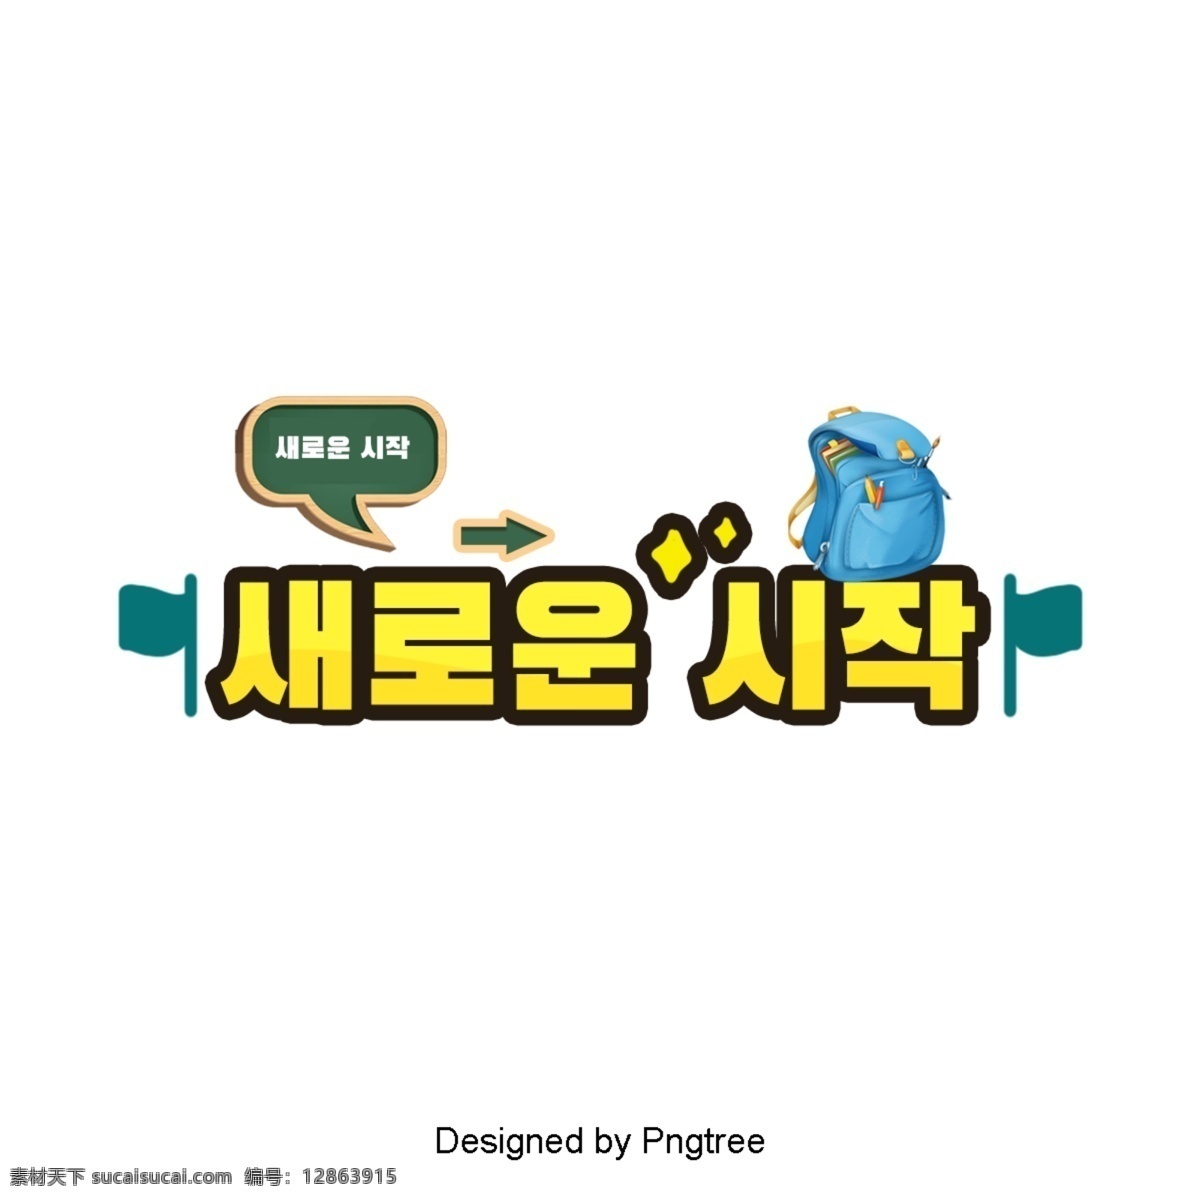 新 韩国 可爱 的卡 通 字体 场景 国旗 黄色 一个新的开始 一个袋子 黑板上